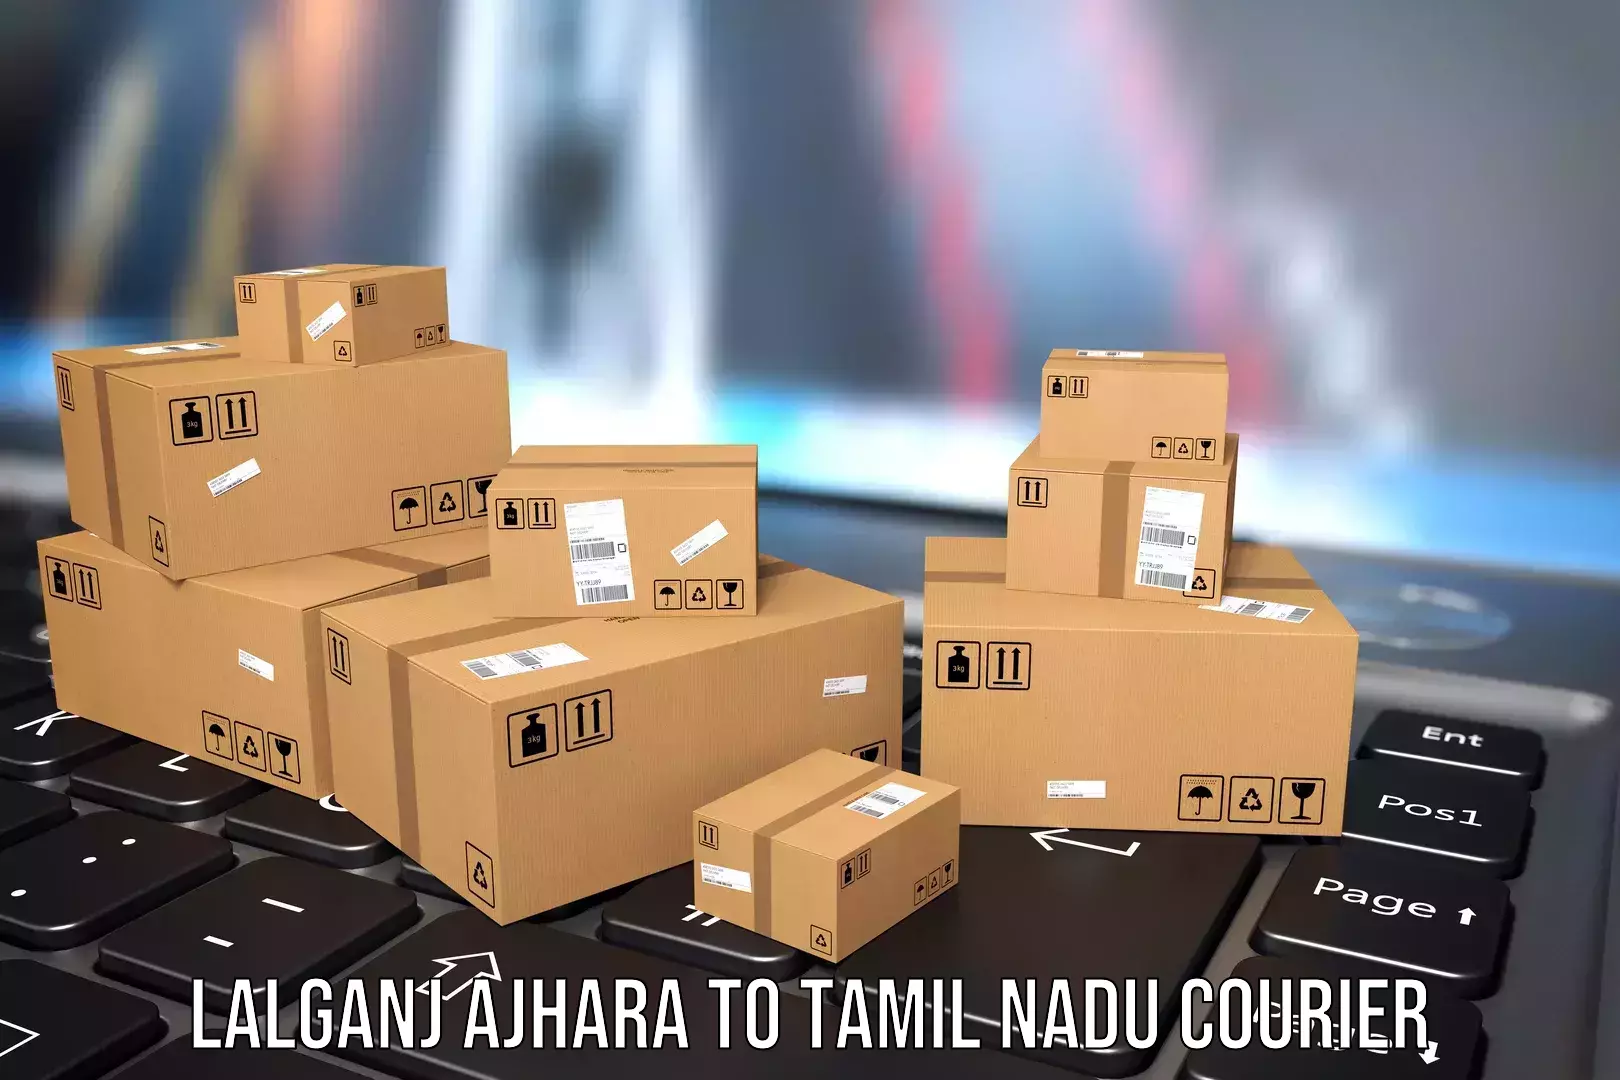 Luggage delivery app Lalganj Ajhara to Thiruvadanai